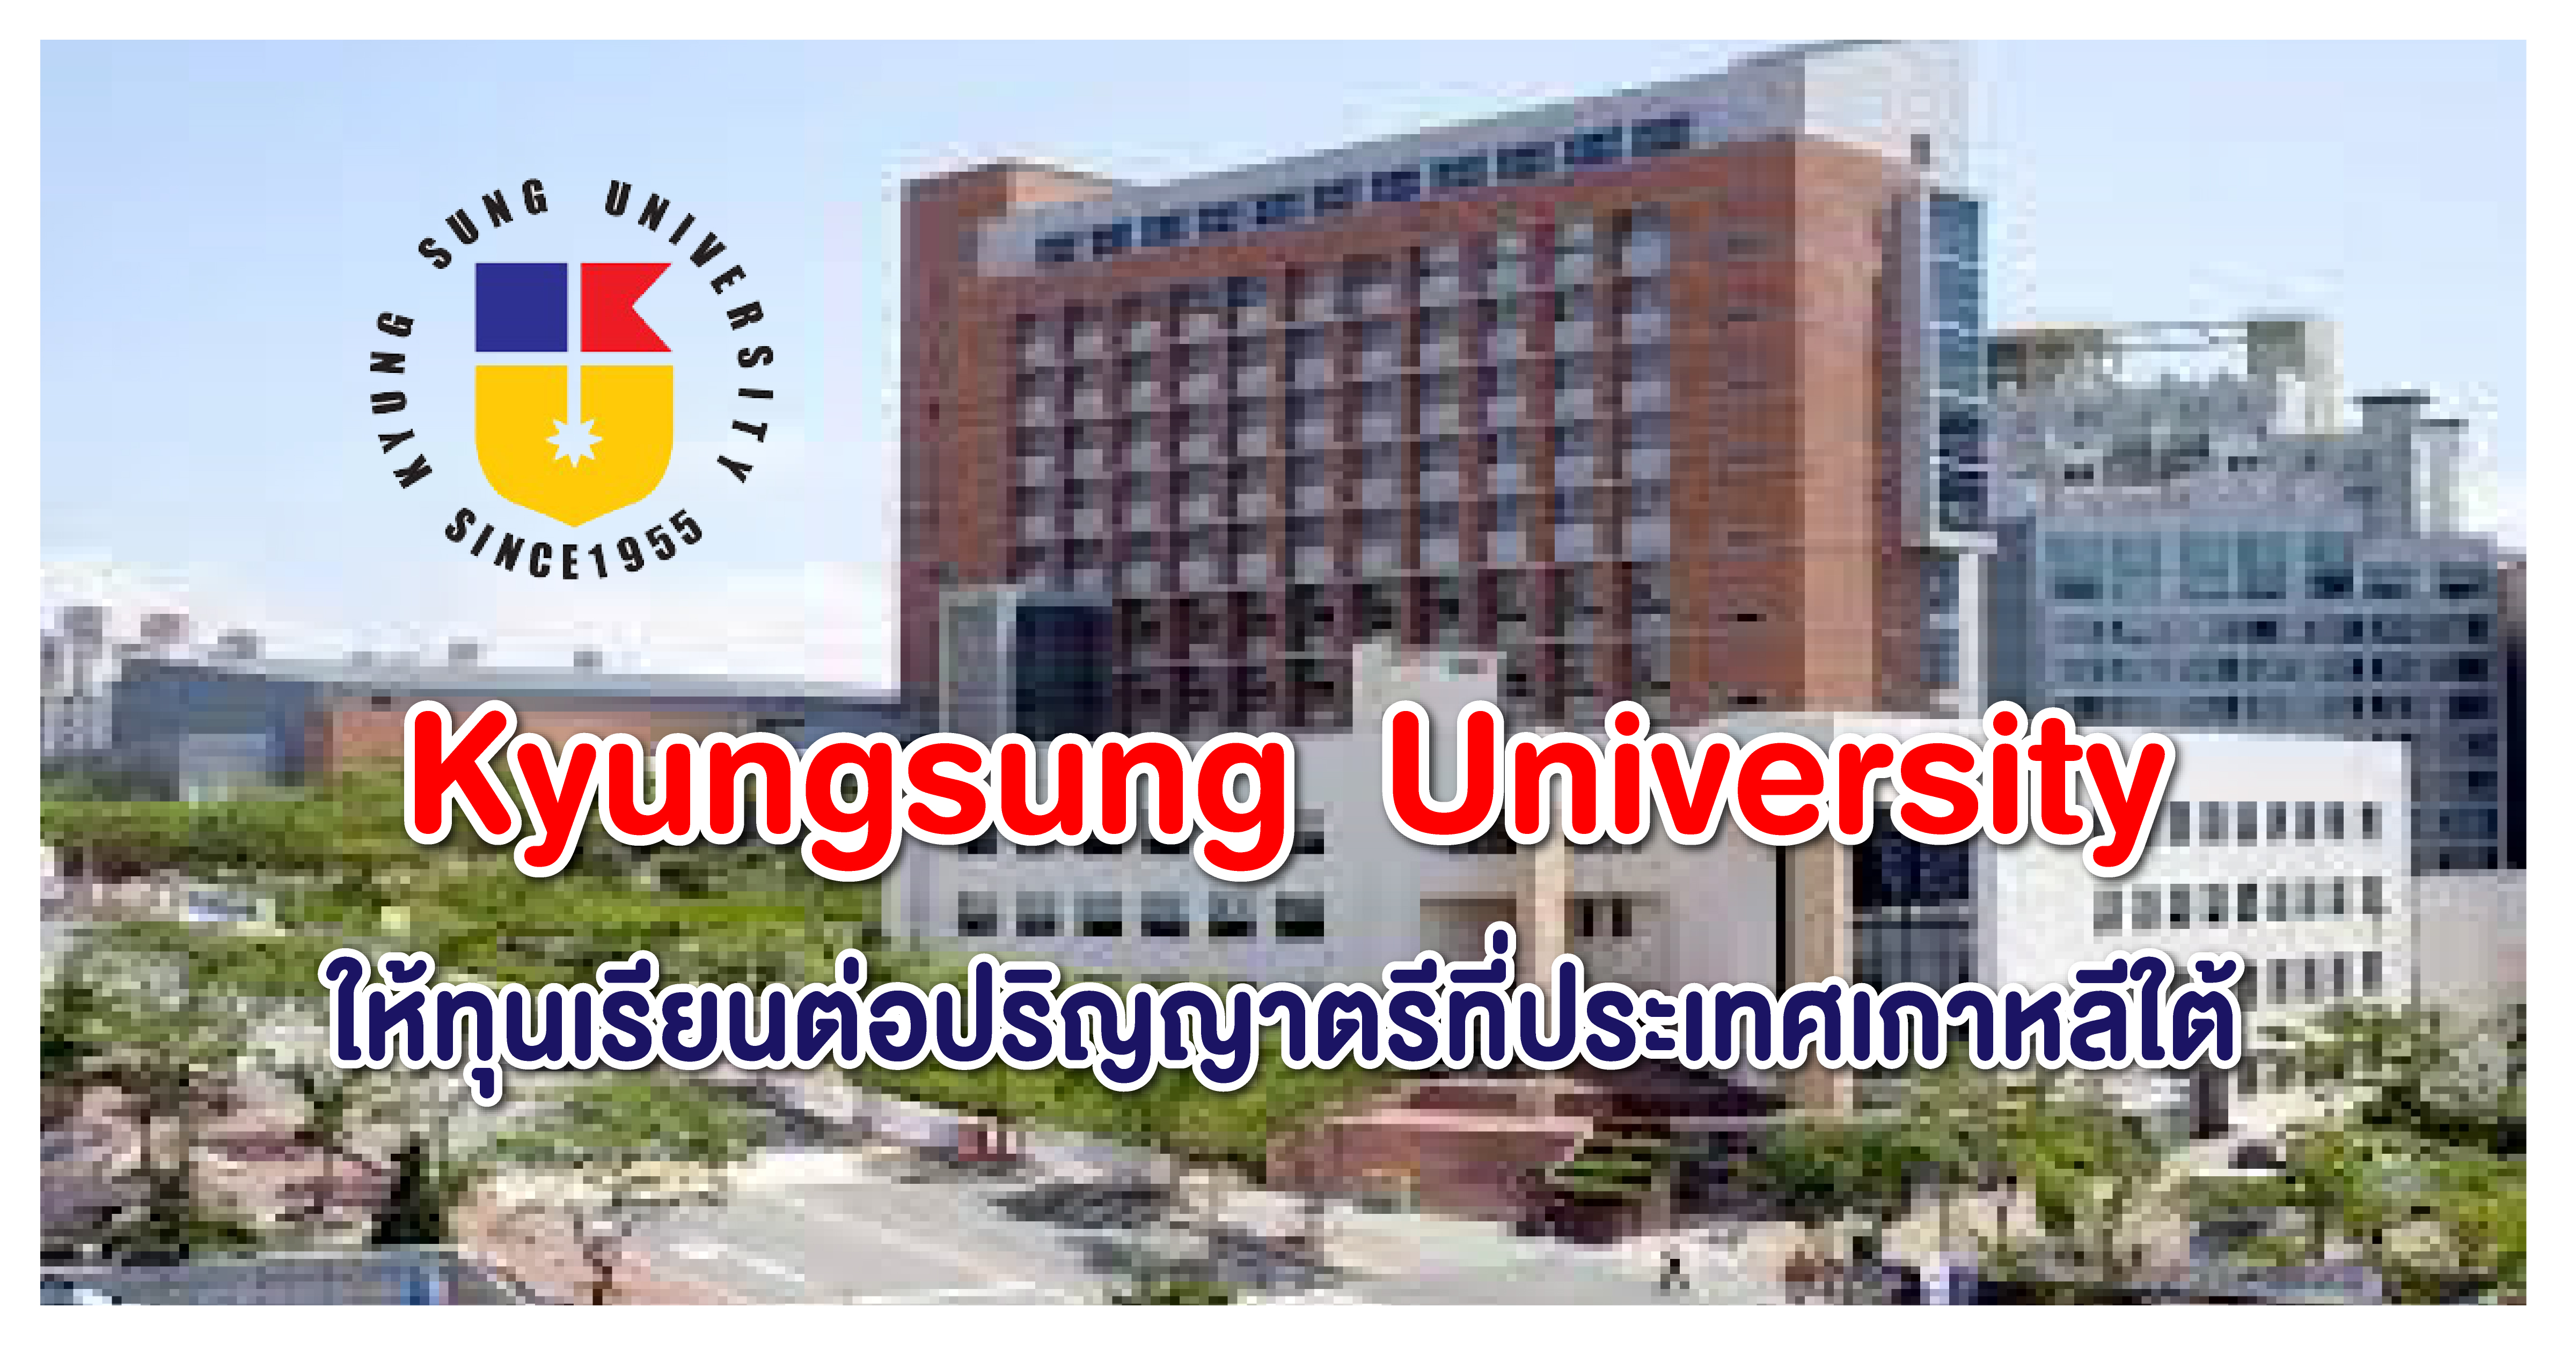 ทุนเรียนต่อป.ตรี ไม่จำกัดสาขา ที่ Kyungsung University ประเทศเกาหลีใต้